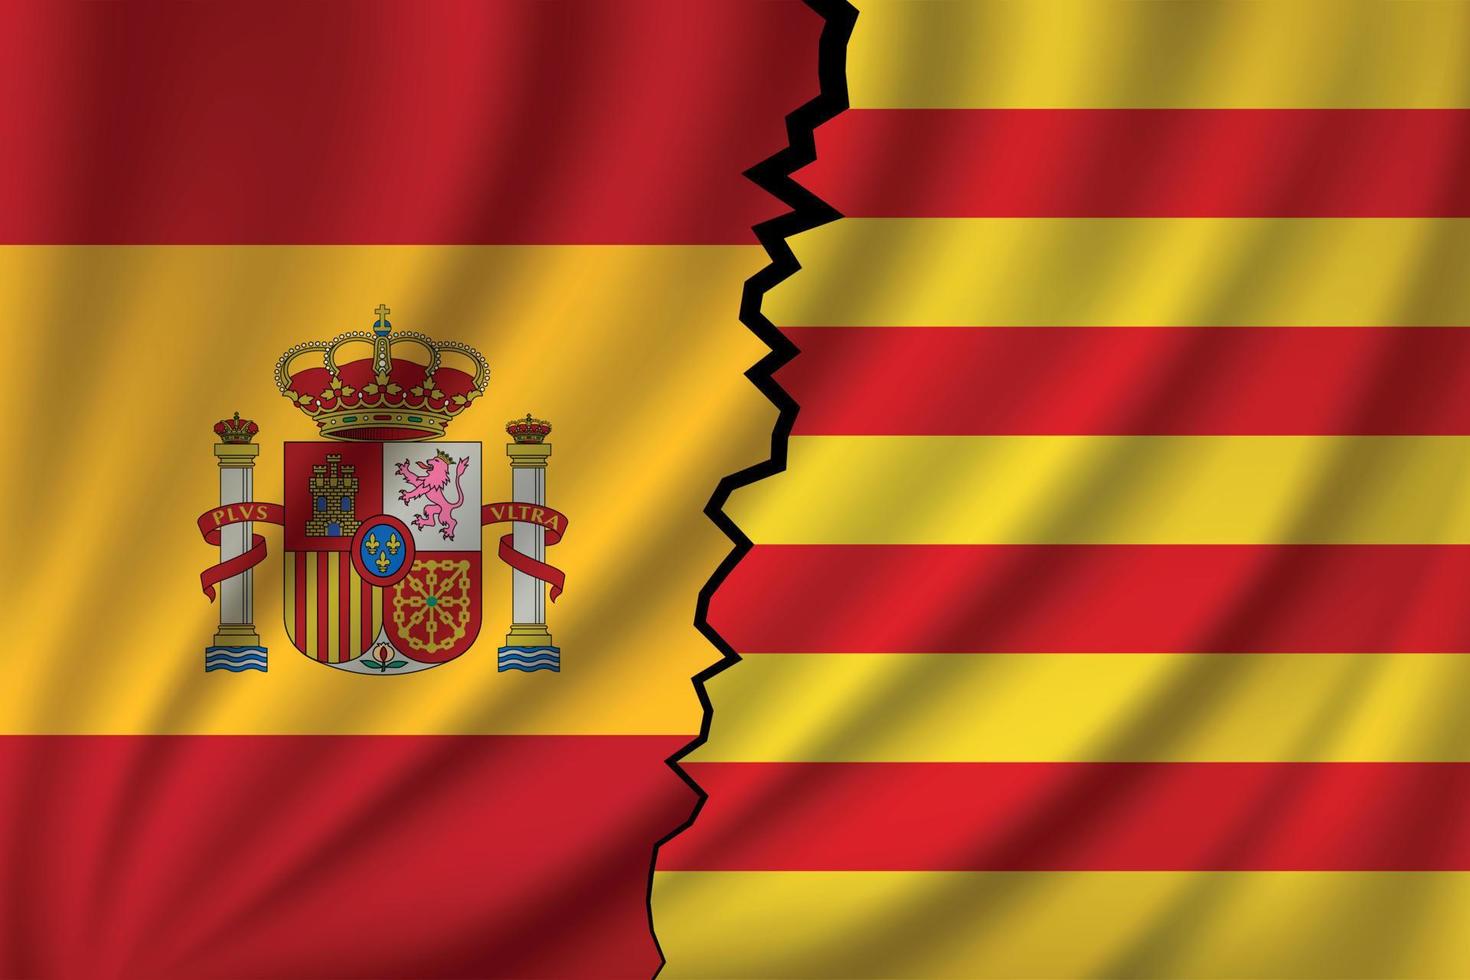 cataluña vs españa - independencia vector